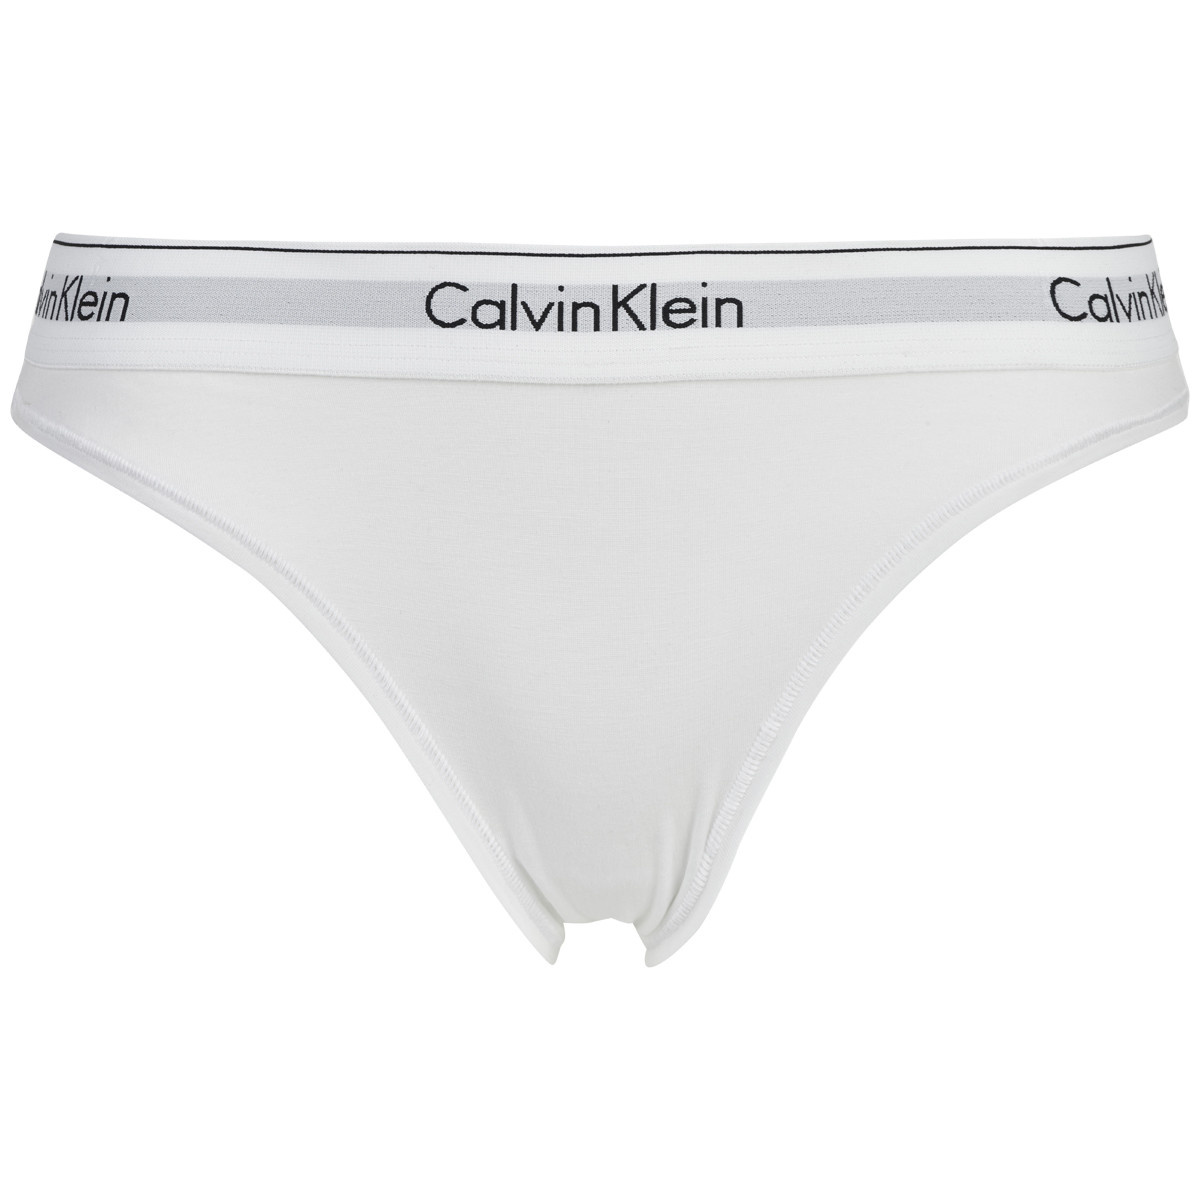 Se Calvin Klein Lingeri Tai Trusse, Farve: Hvid, Størrelse: M, Dame hos Netlingeri.dk